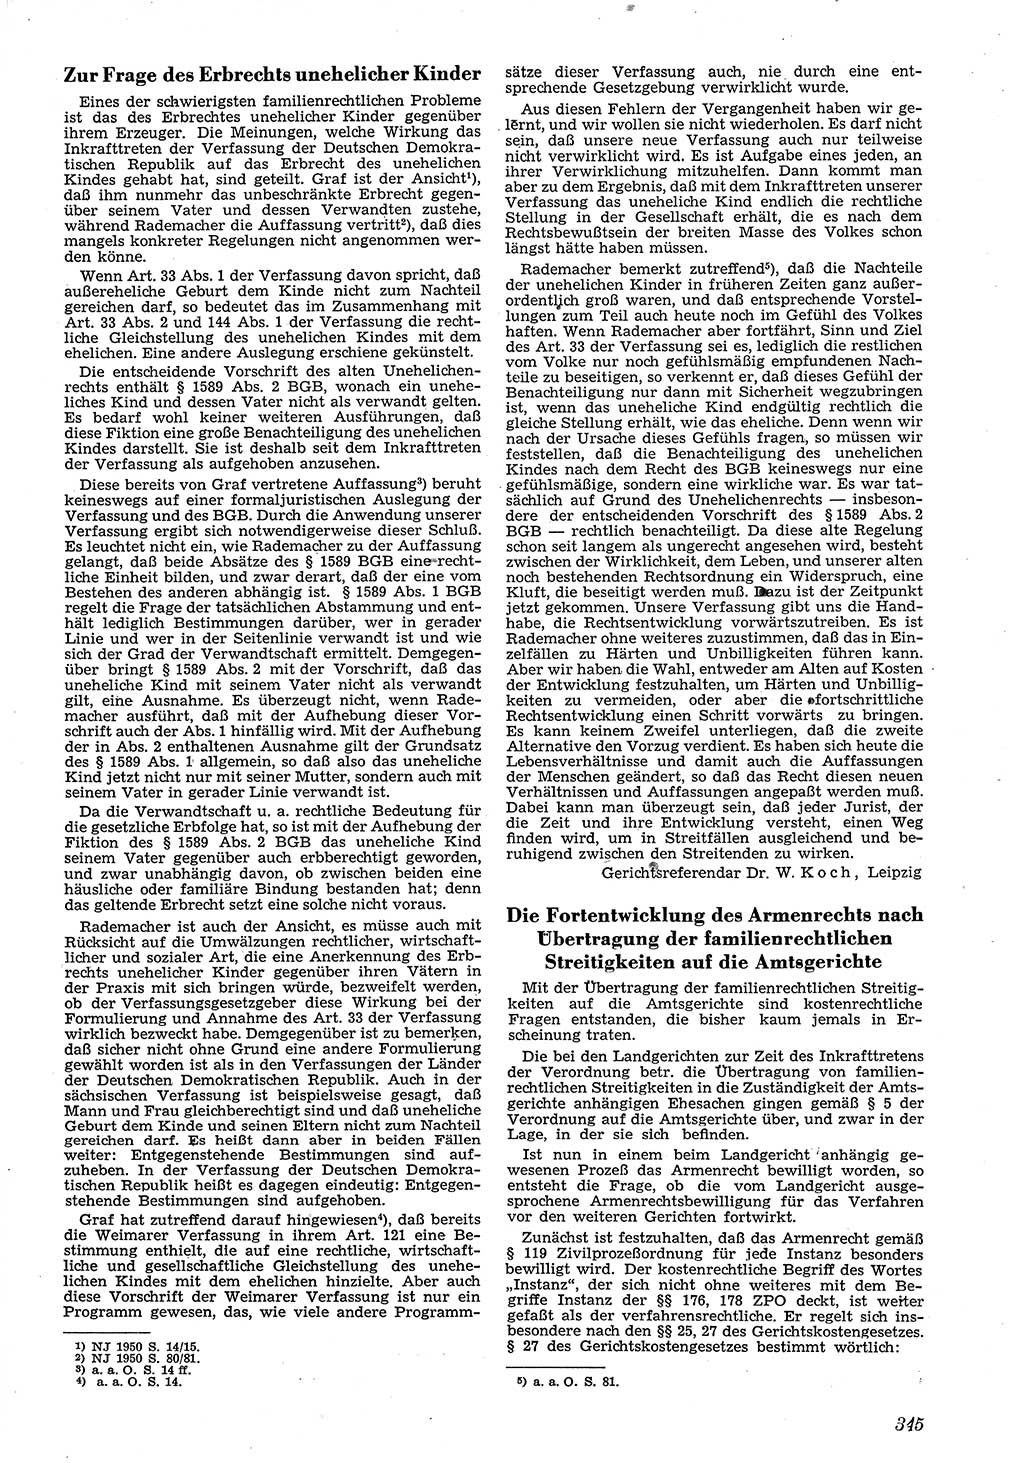 Neue Justiz (NJ), Zeitschrift für Recht und Rechtswissenschaft [Deutsche Demokratische Republik (DDR)], 4. Jahrgang 1950, Seite 345 (NJ DDR 1950, S. 345)